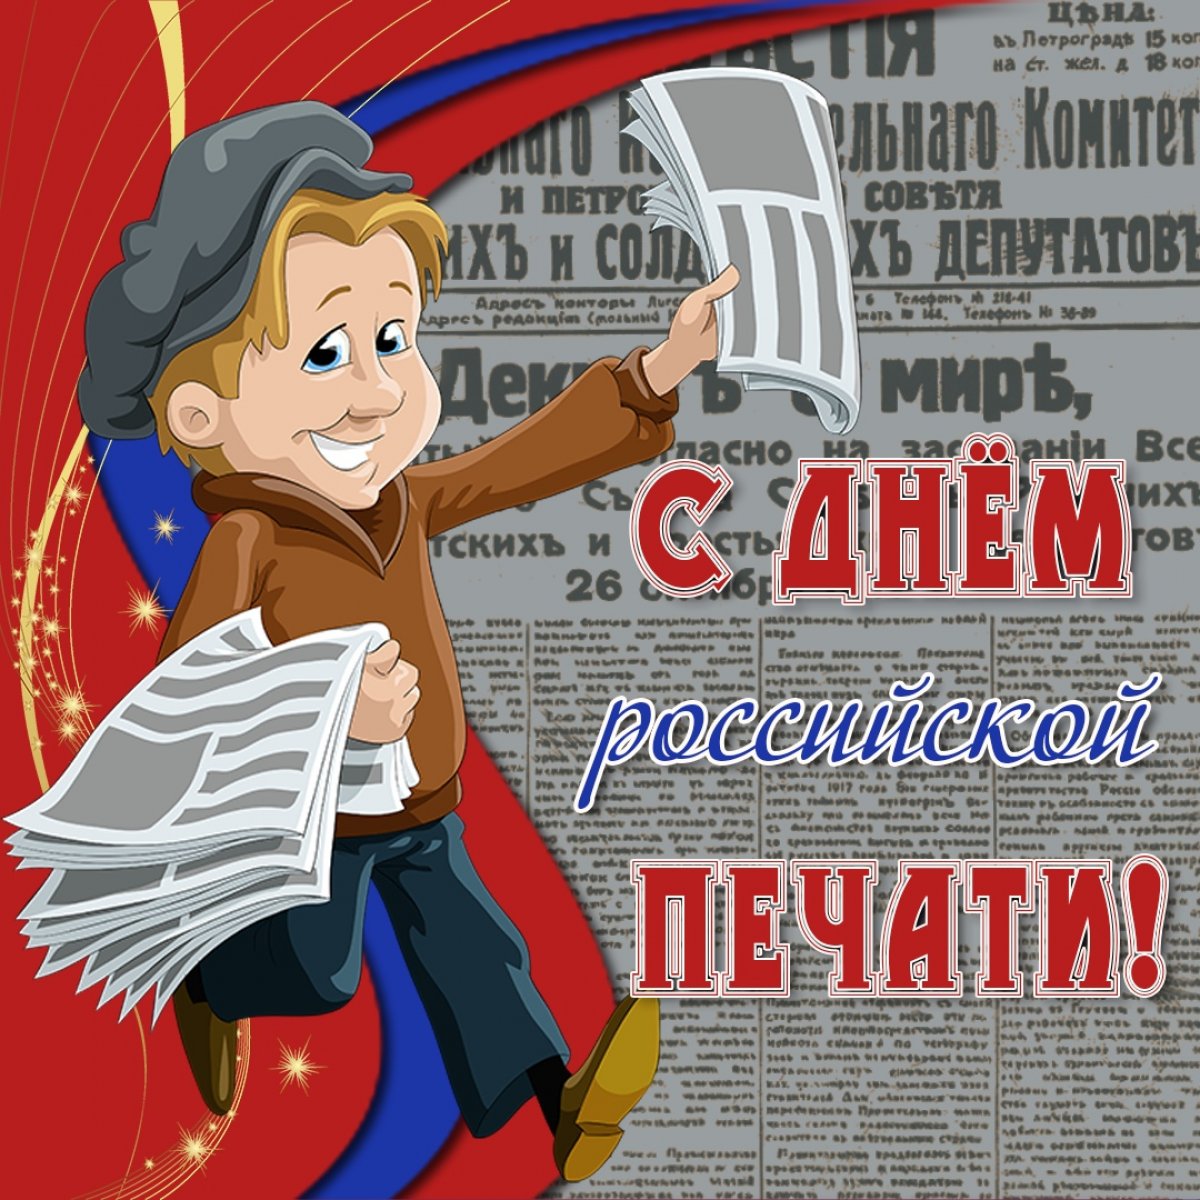 Поздравляем всех студентов и преподавателей Высшей школы печати и медиаиндустрии Московского Политеха и остальных причастных с Днём российской печати!